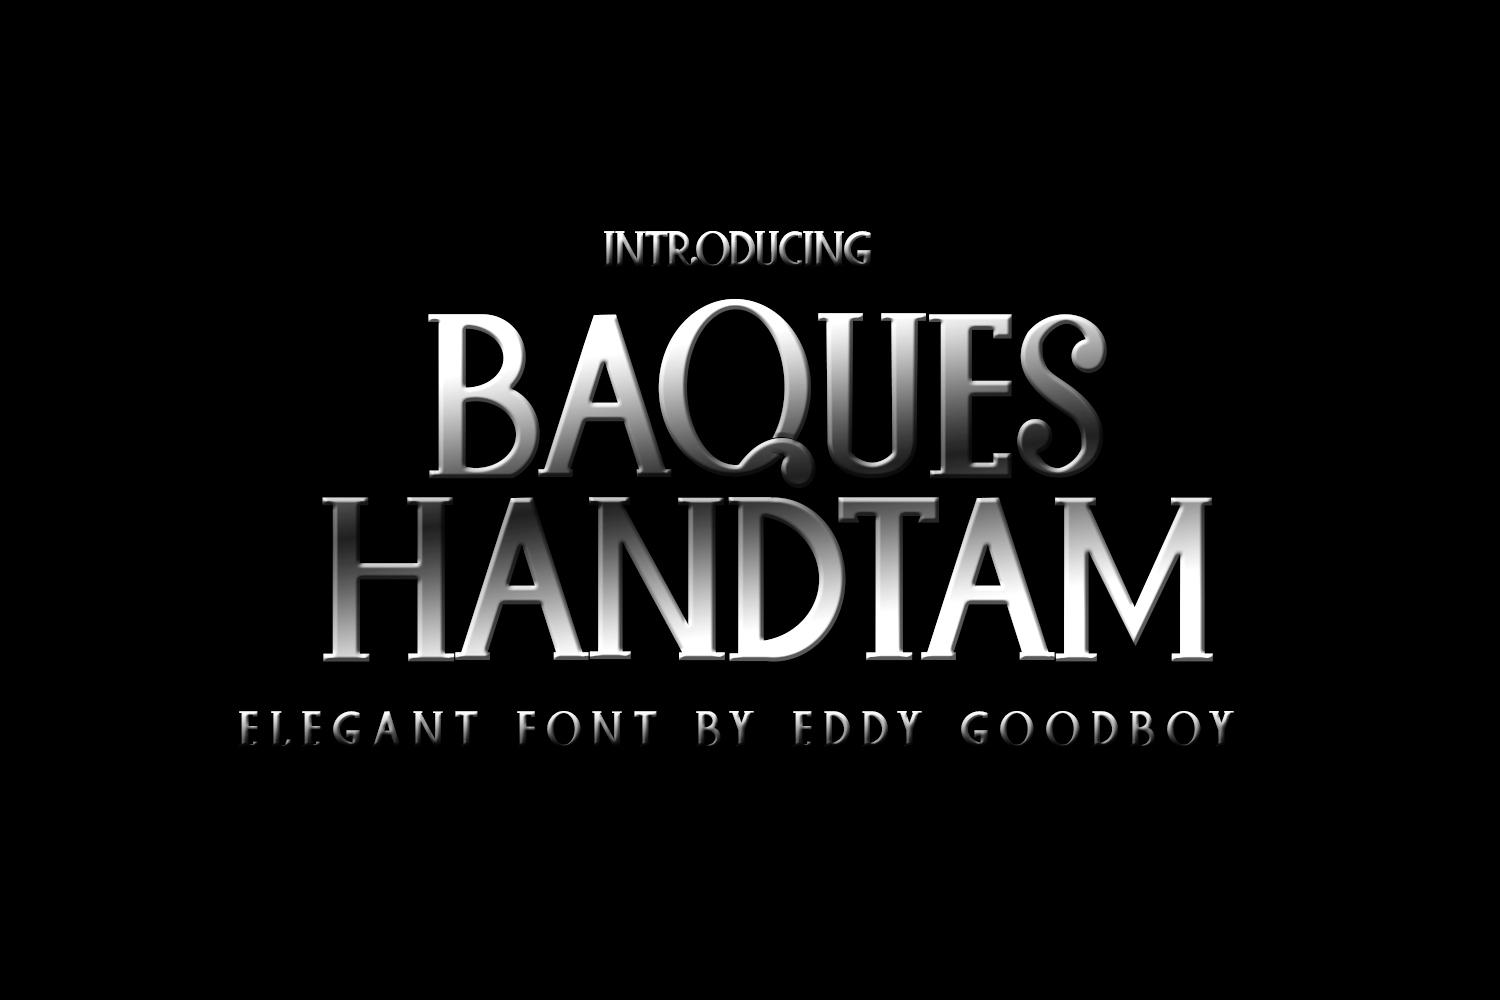 Baques Handtam Free Font